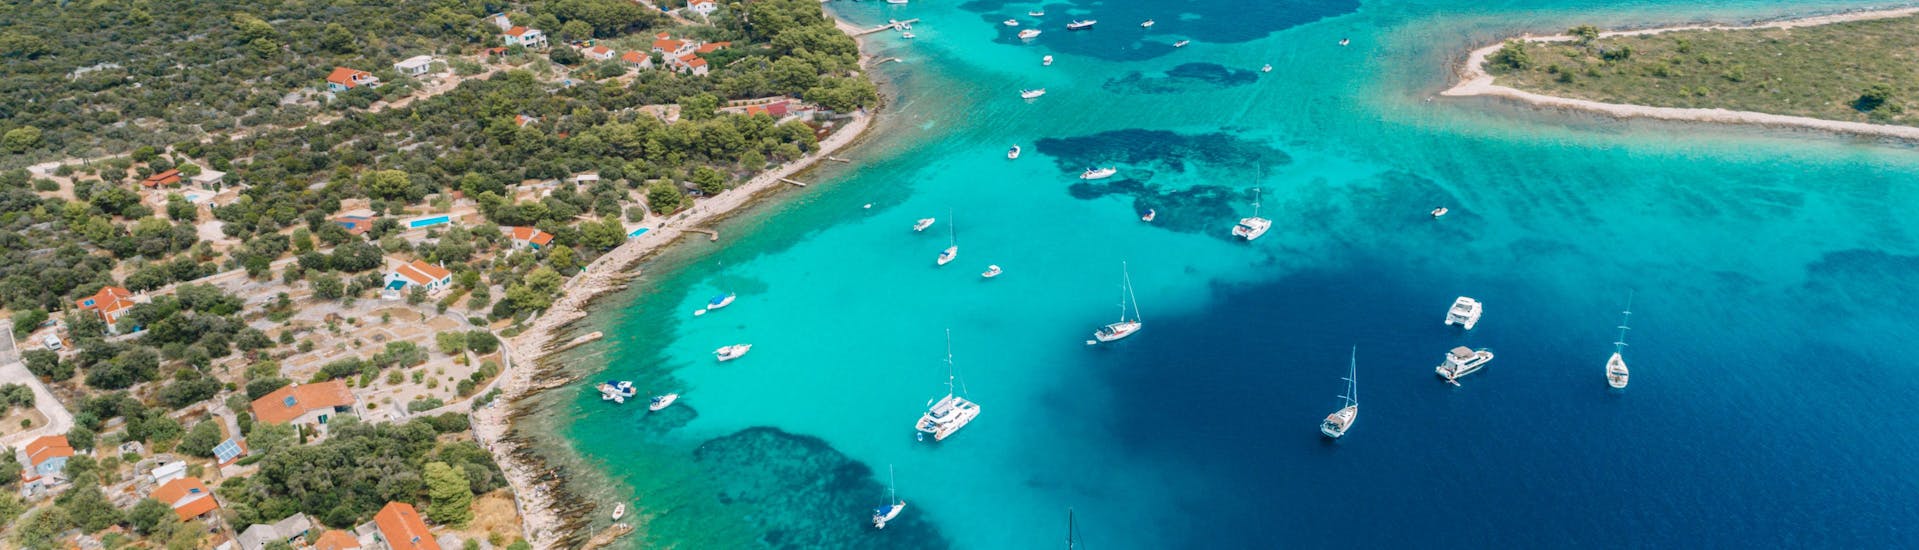 Paysage de Split avec des bateaux et une eau bleue cristalline.